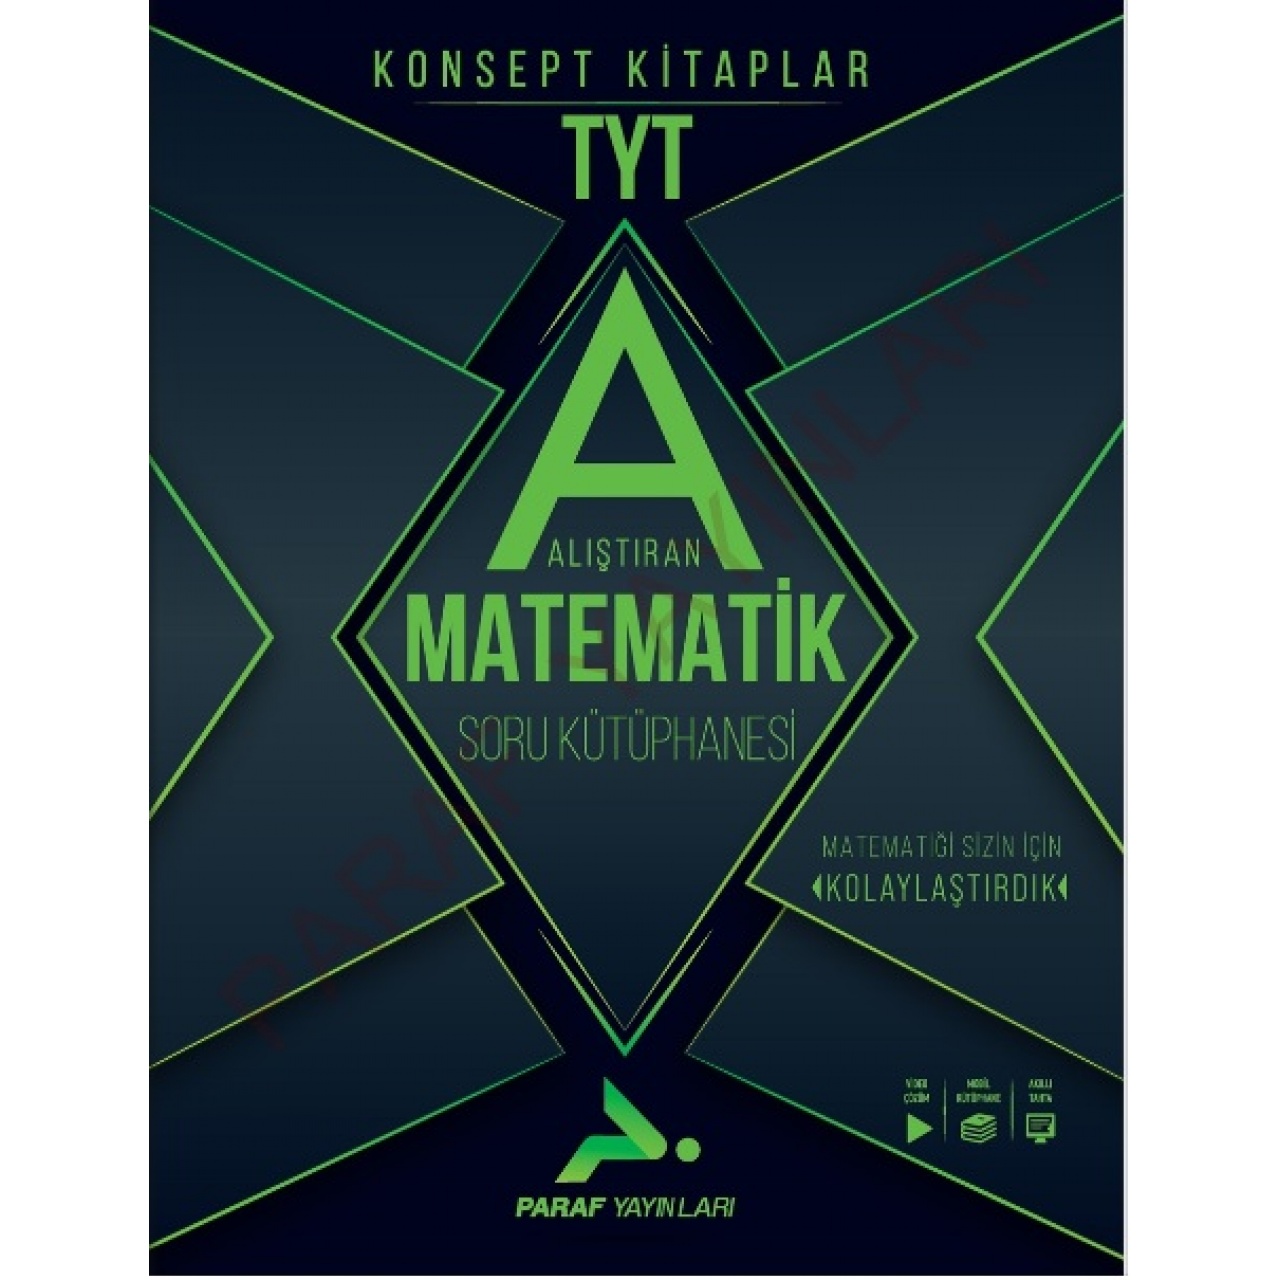 TYT Alıştıran Matematik Soru Kütüphanesi Paraf Yayınları